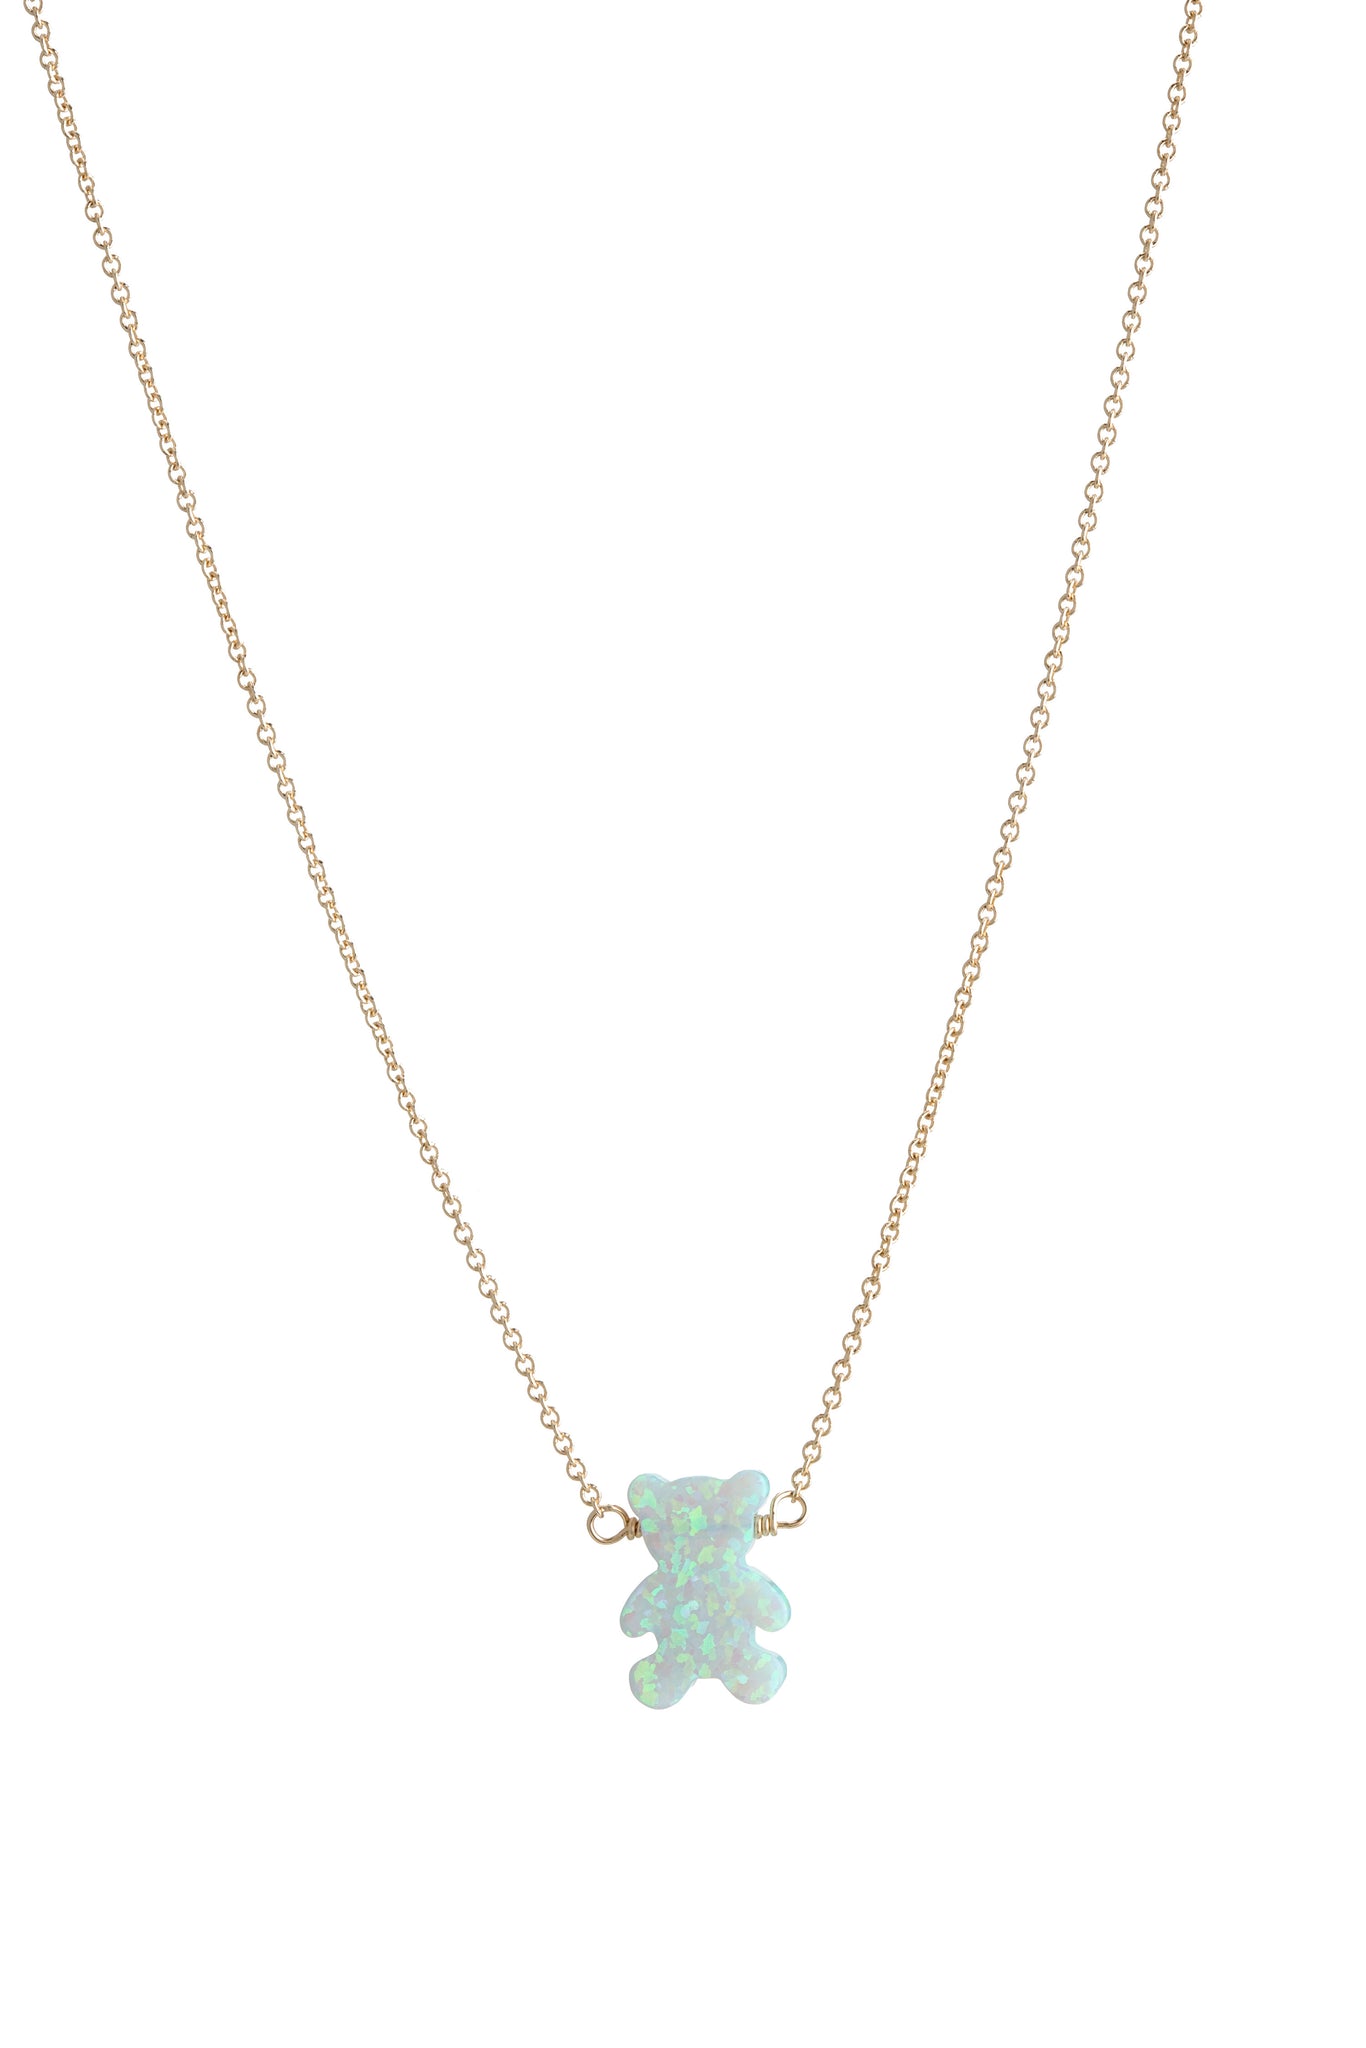 Macy's Children's Teddy Bear Teddy Bear Pendant Necklace in 14k Gold -  Macy's